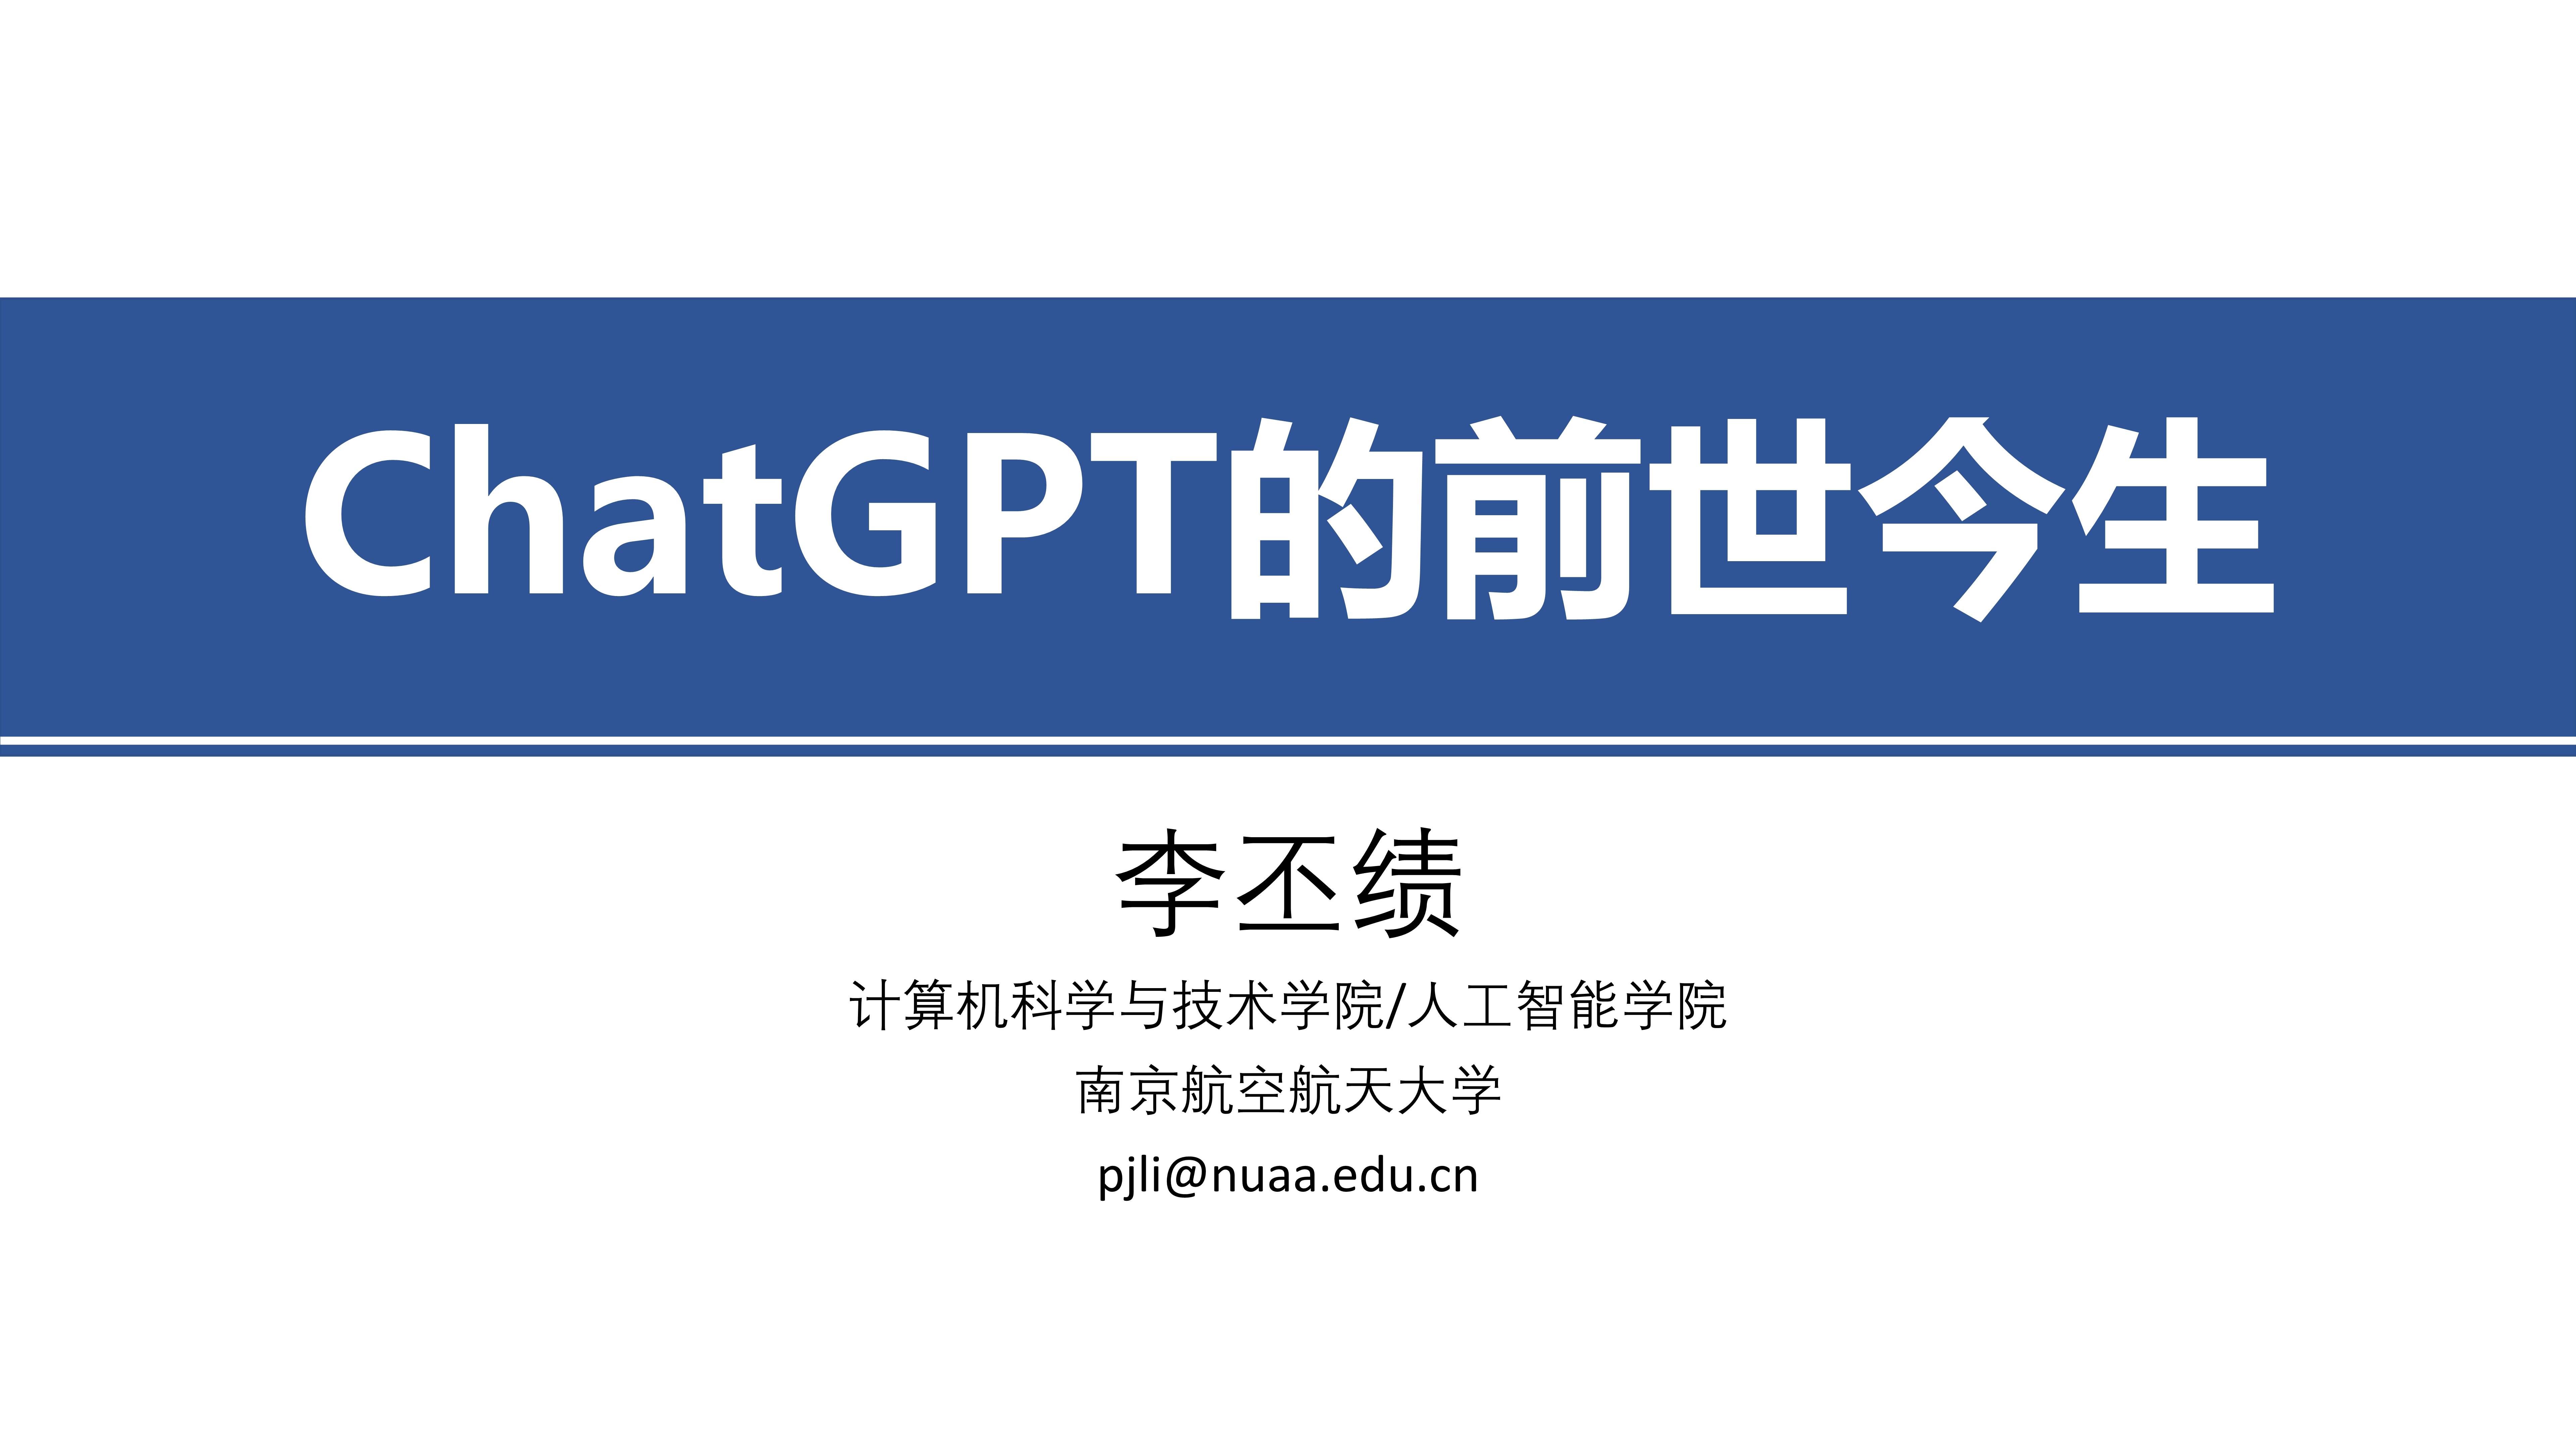 2016小苹果韩国版
:464页幻灯片《ChatGPT+的前世今生》目前最全的课件